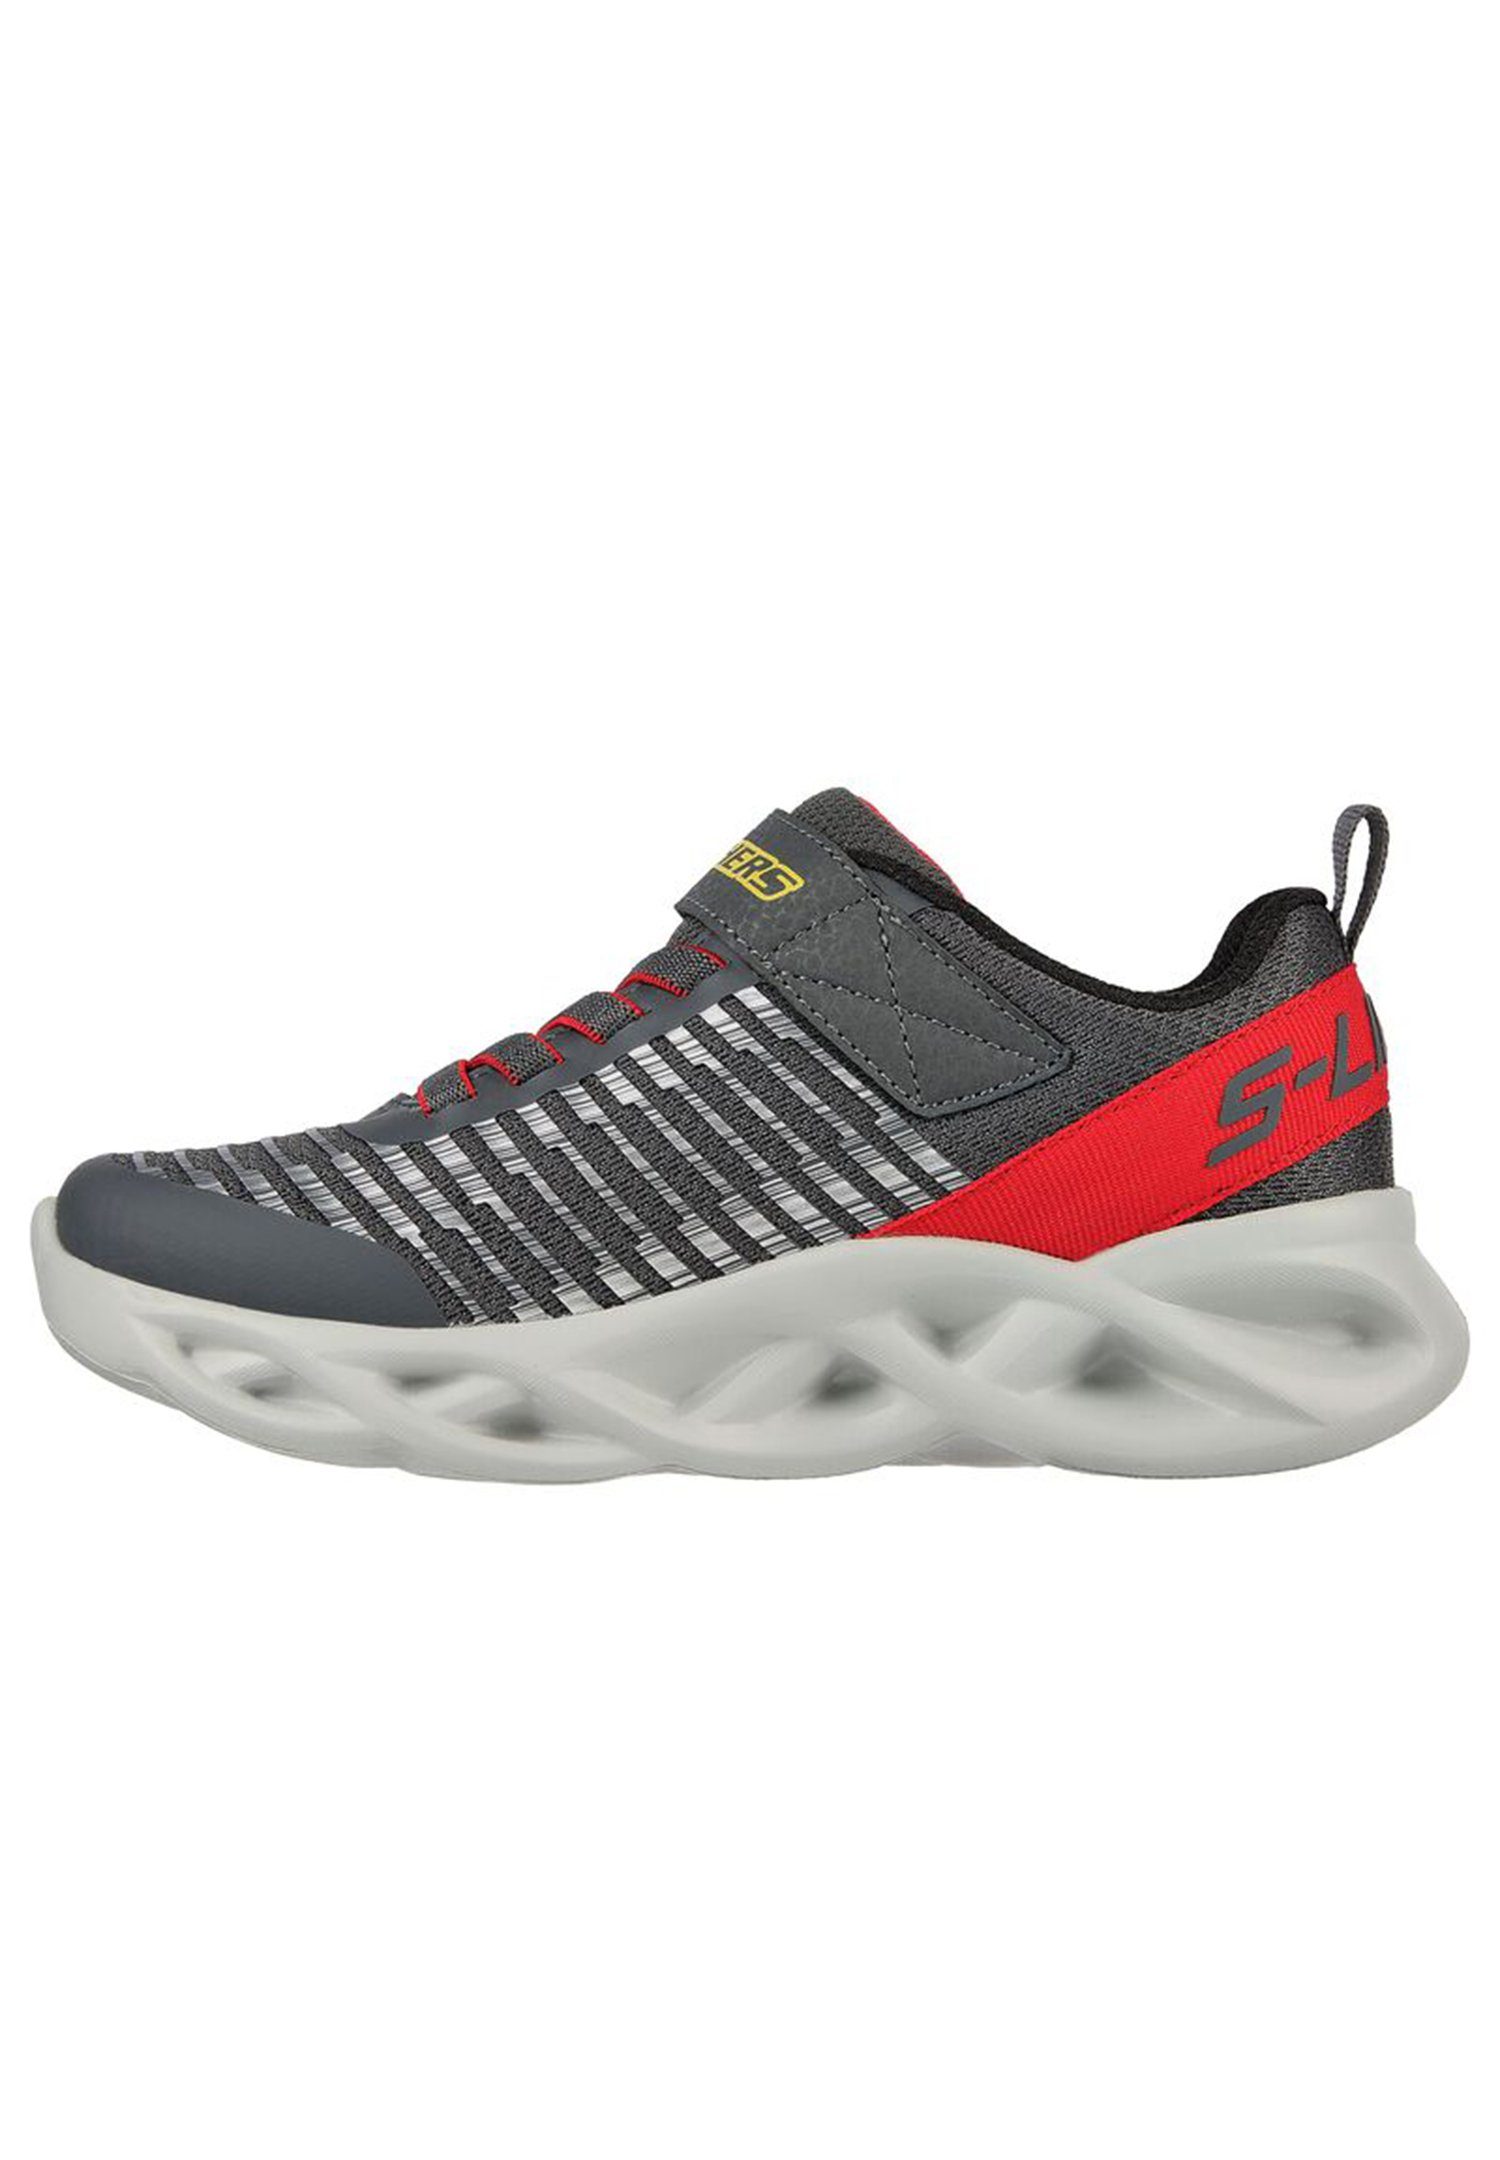 Skechers S Lights - Brights Twisty Sneaker - NOVLO